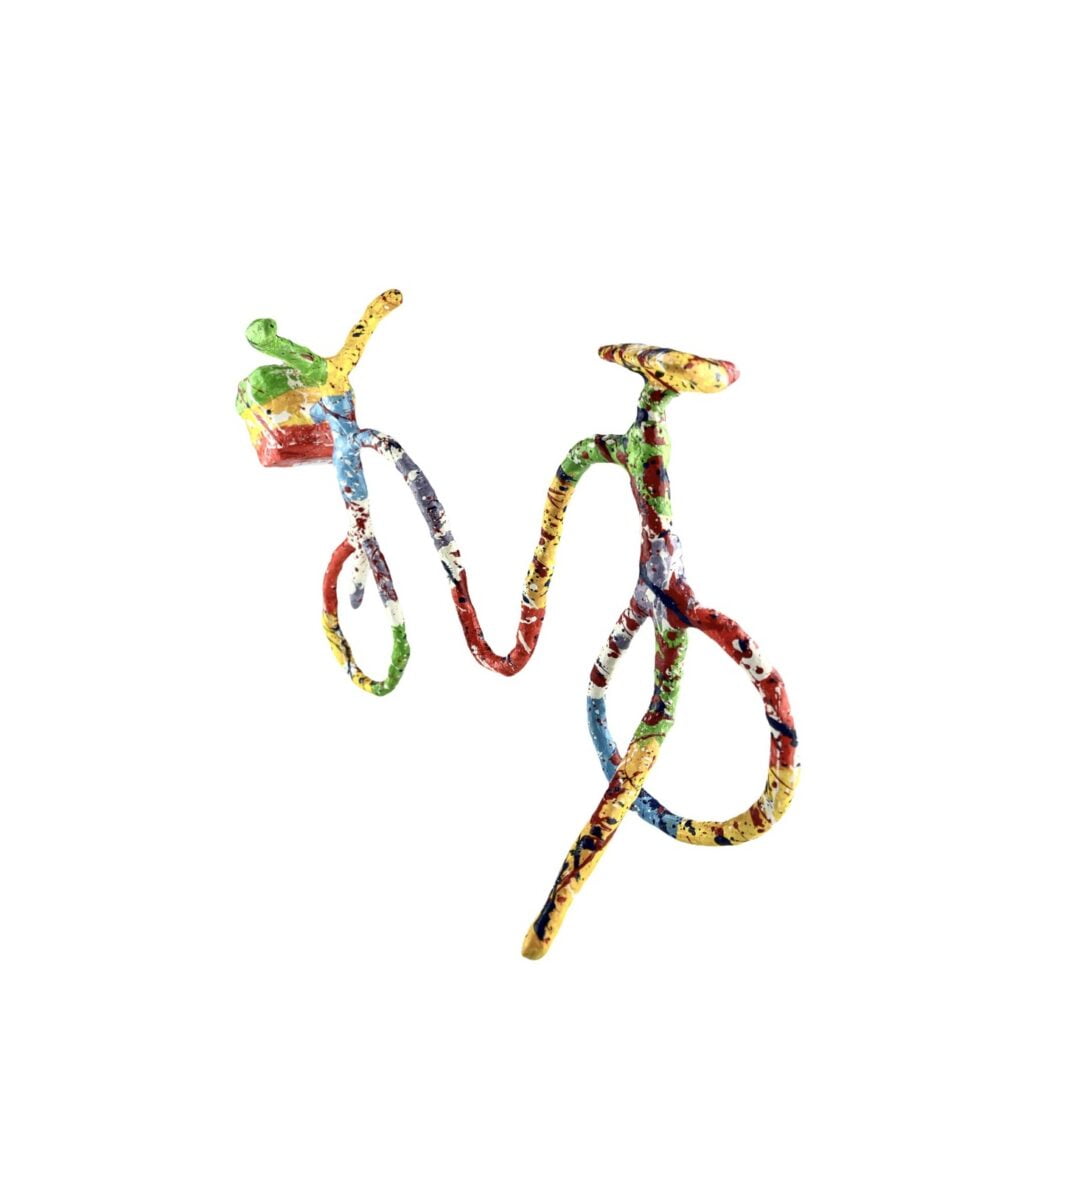 “Ποδήλατο με καλάθι” 31 εκ.-Ανδρέας Ψαράκος